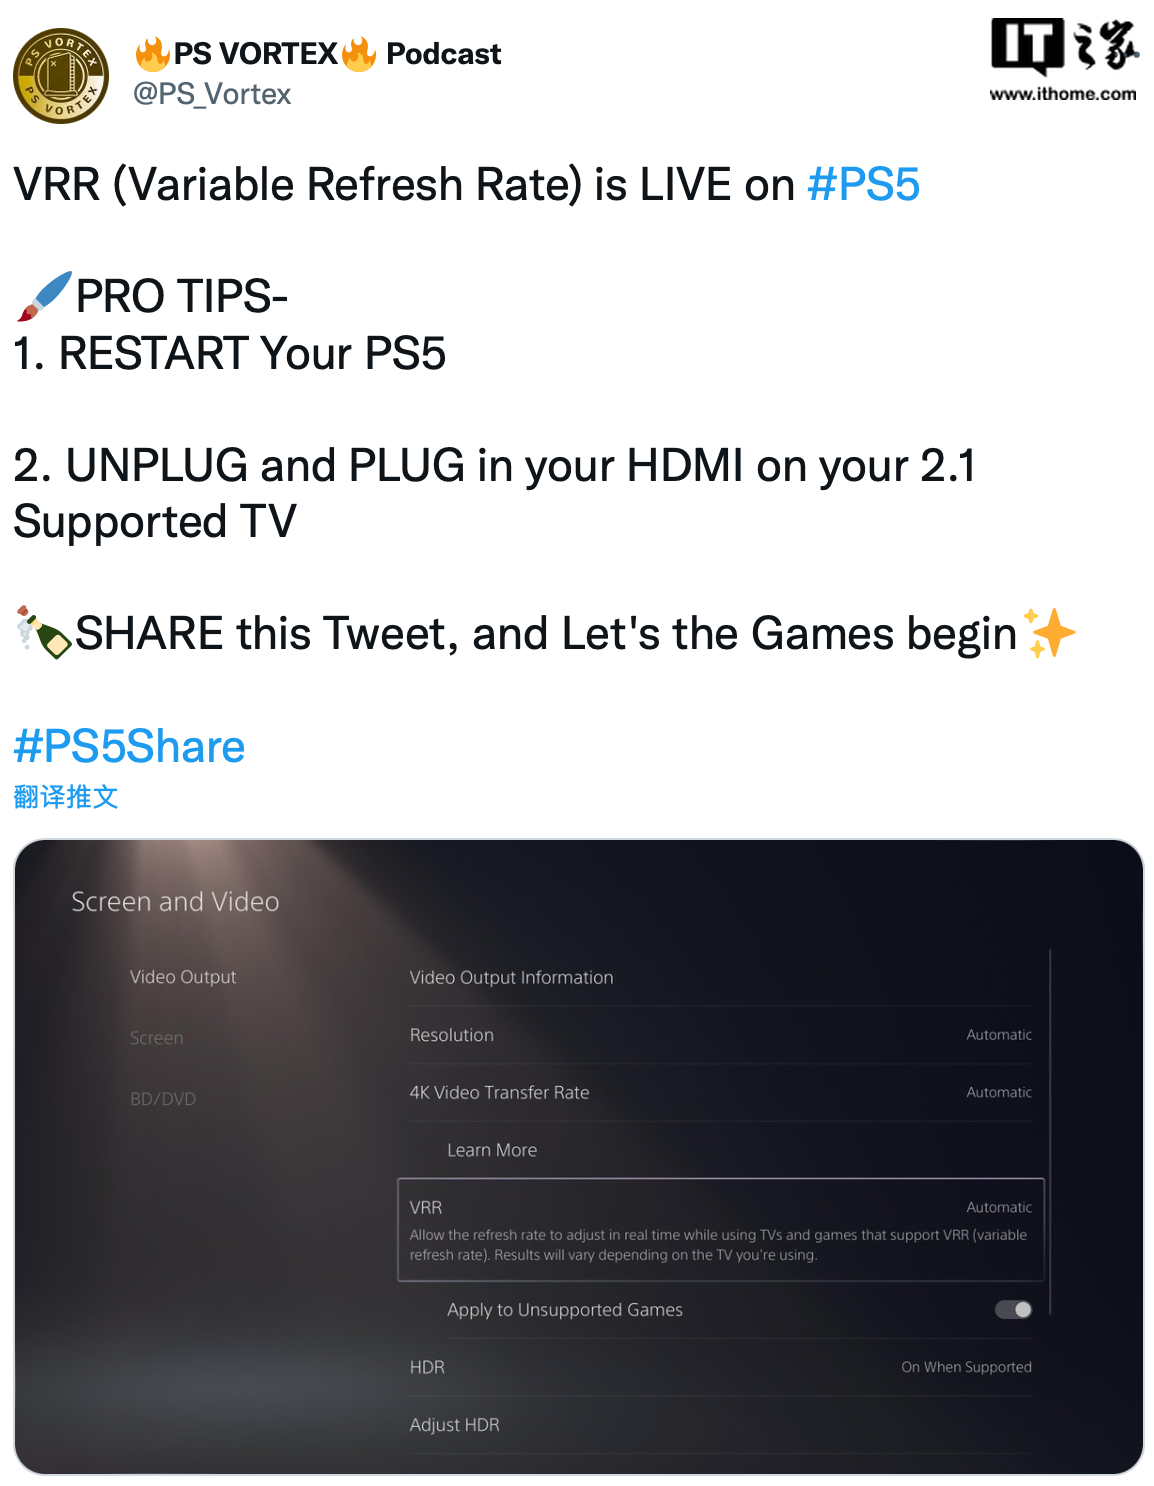 无需等待，索尼PS5现在重启即可支持VRR功能